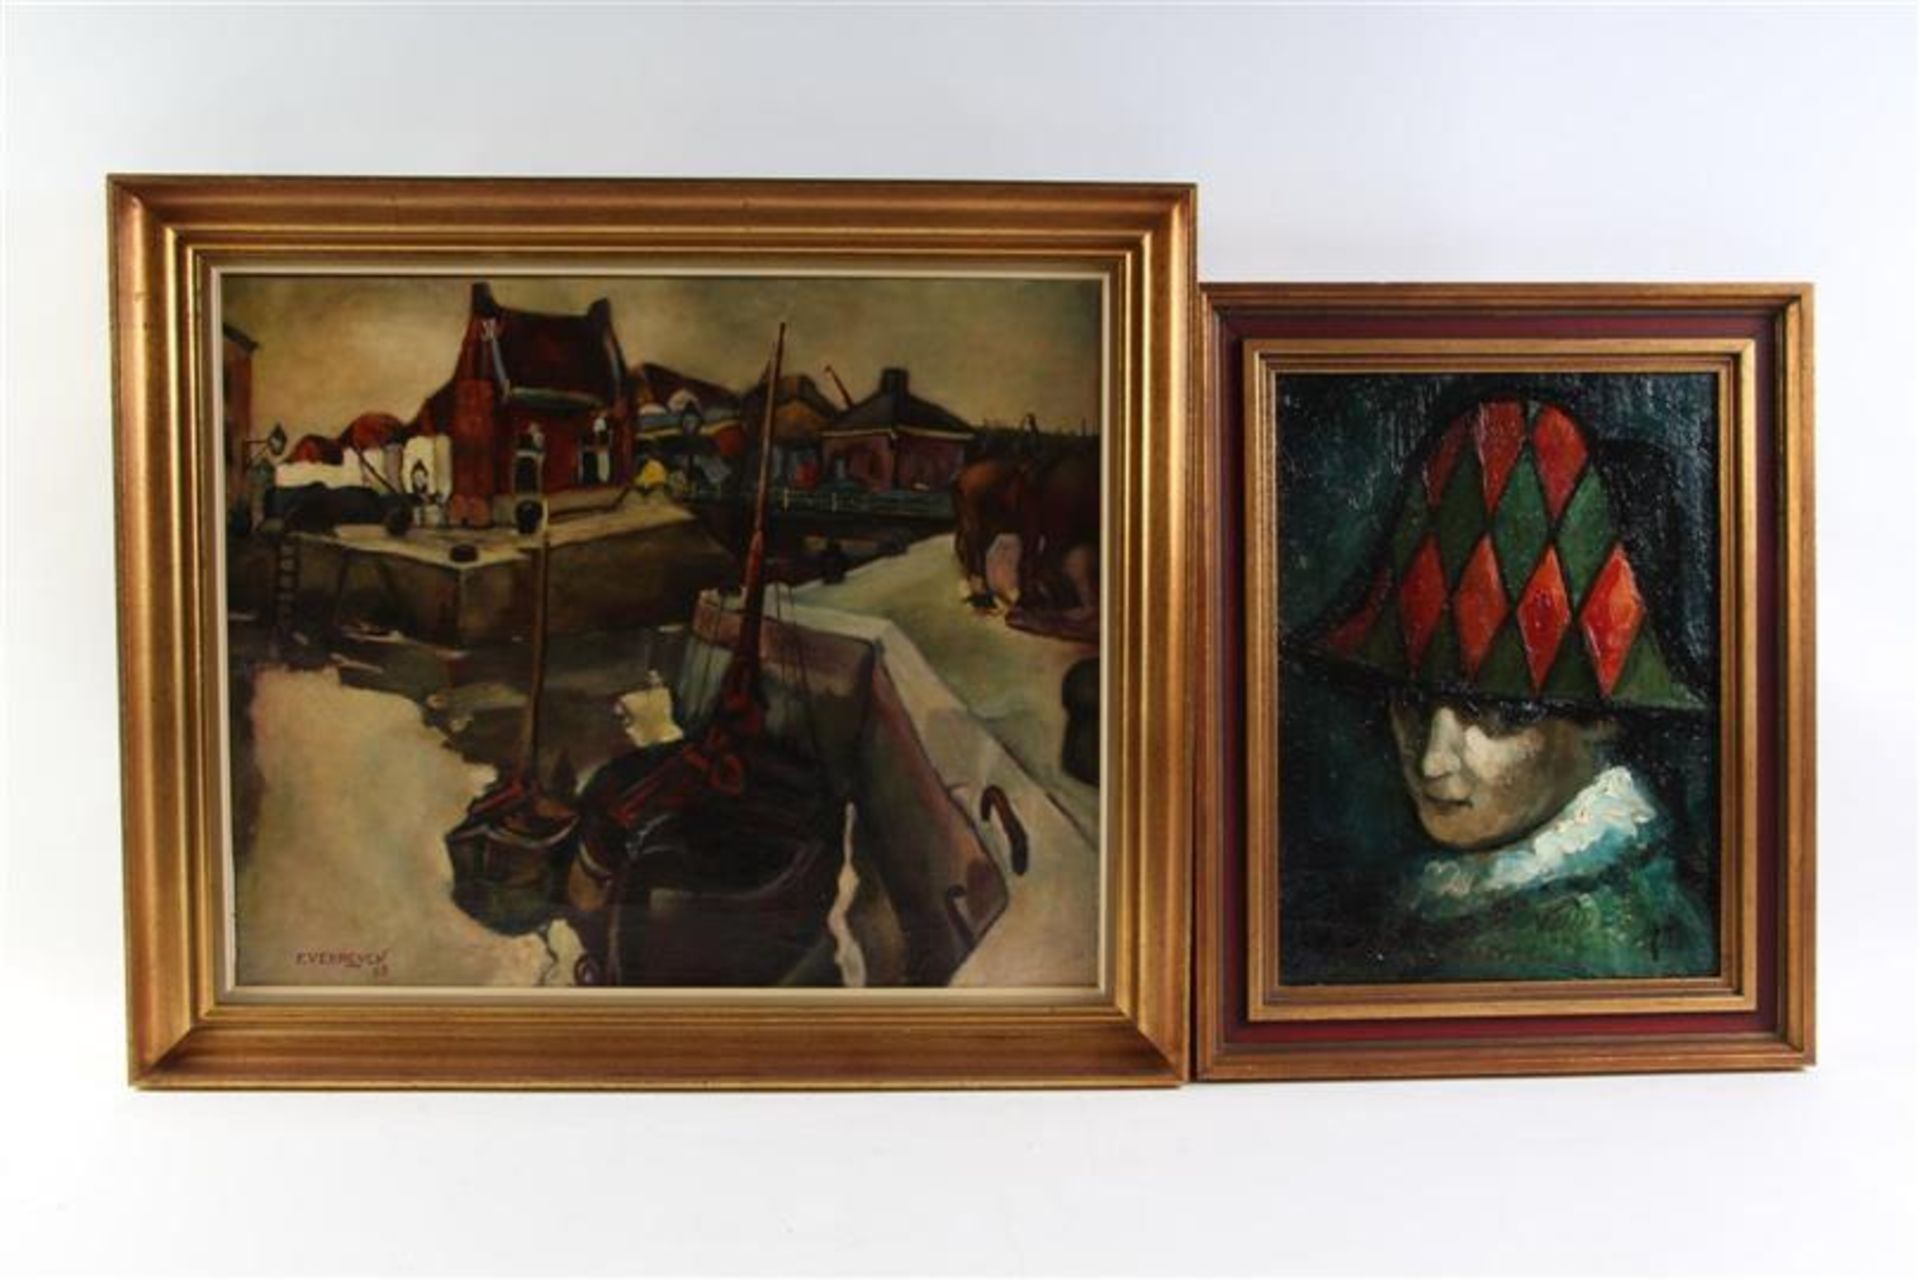 Twee schilderijen op doek, waaronder 'Kade met schepen' gesigneerd K. Vermeire. HxB: 44 x 55 en 38 x